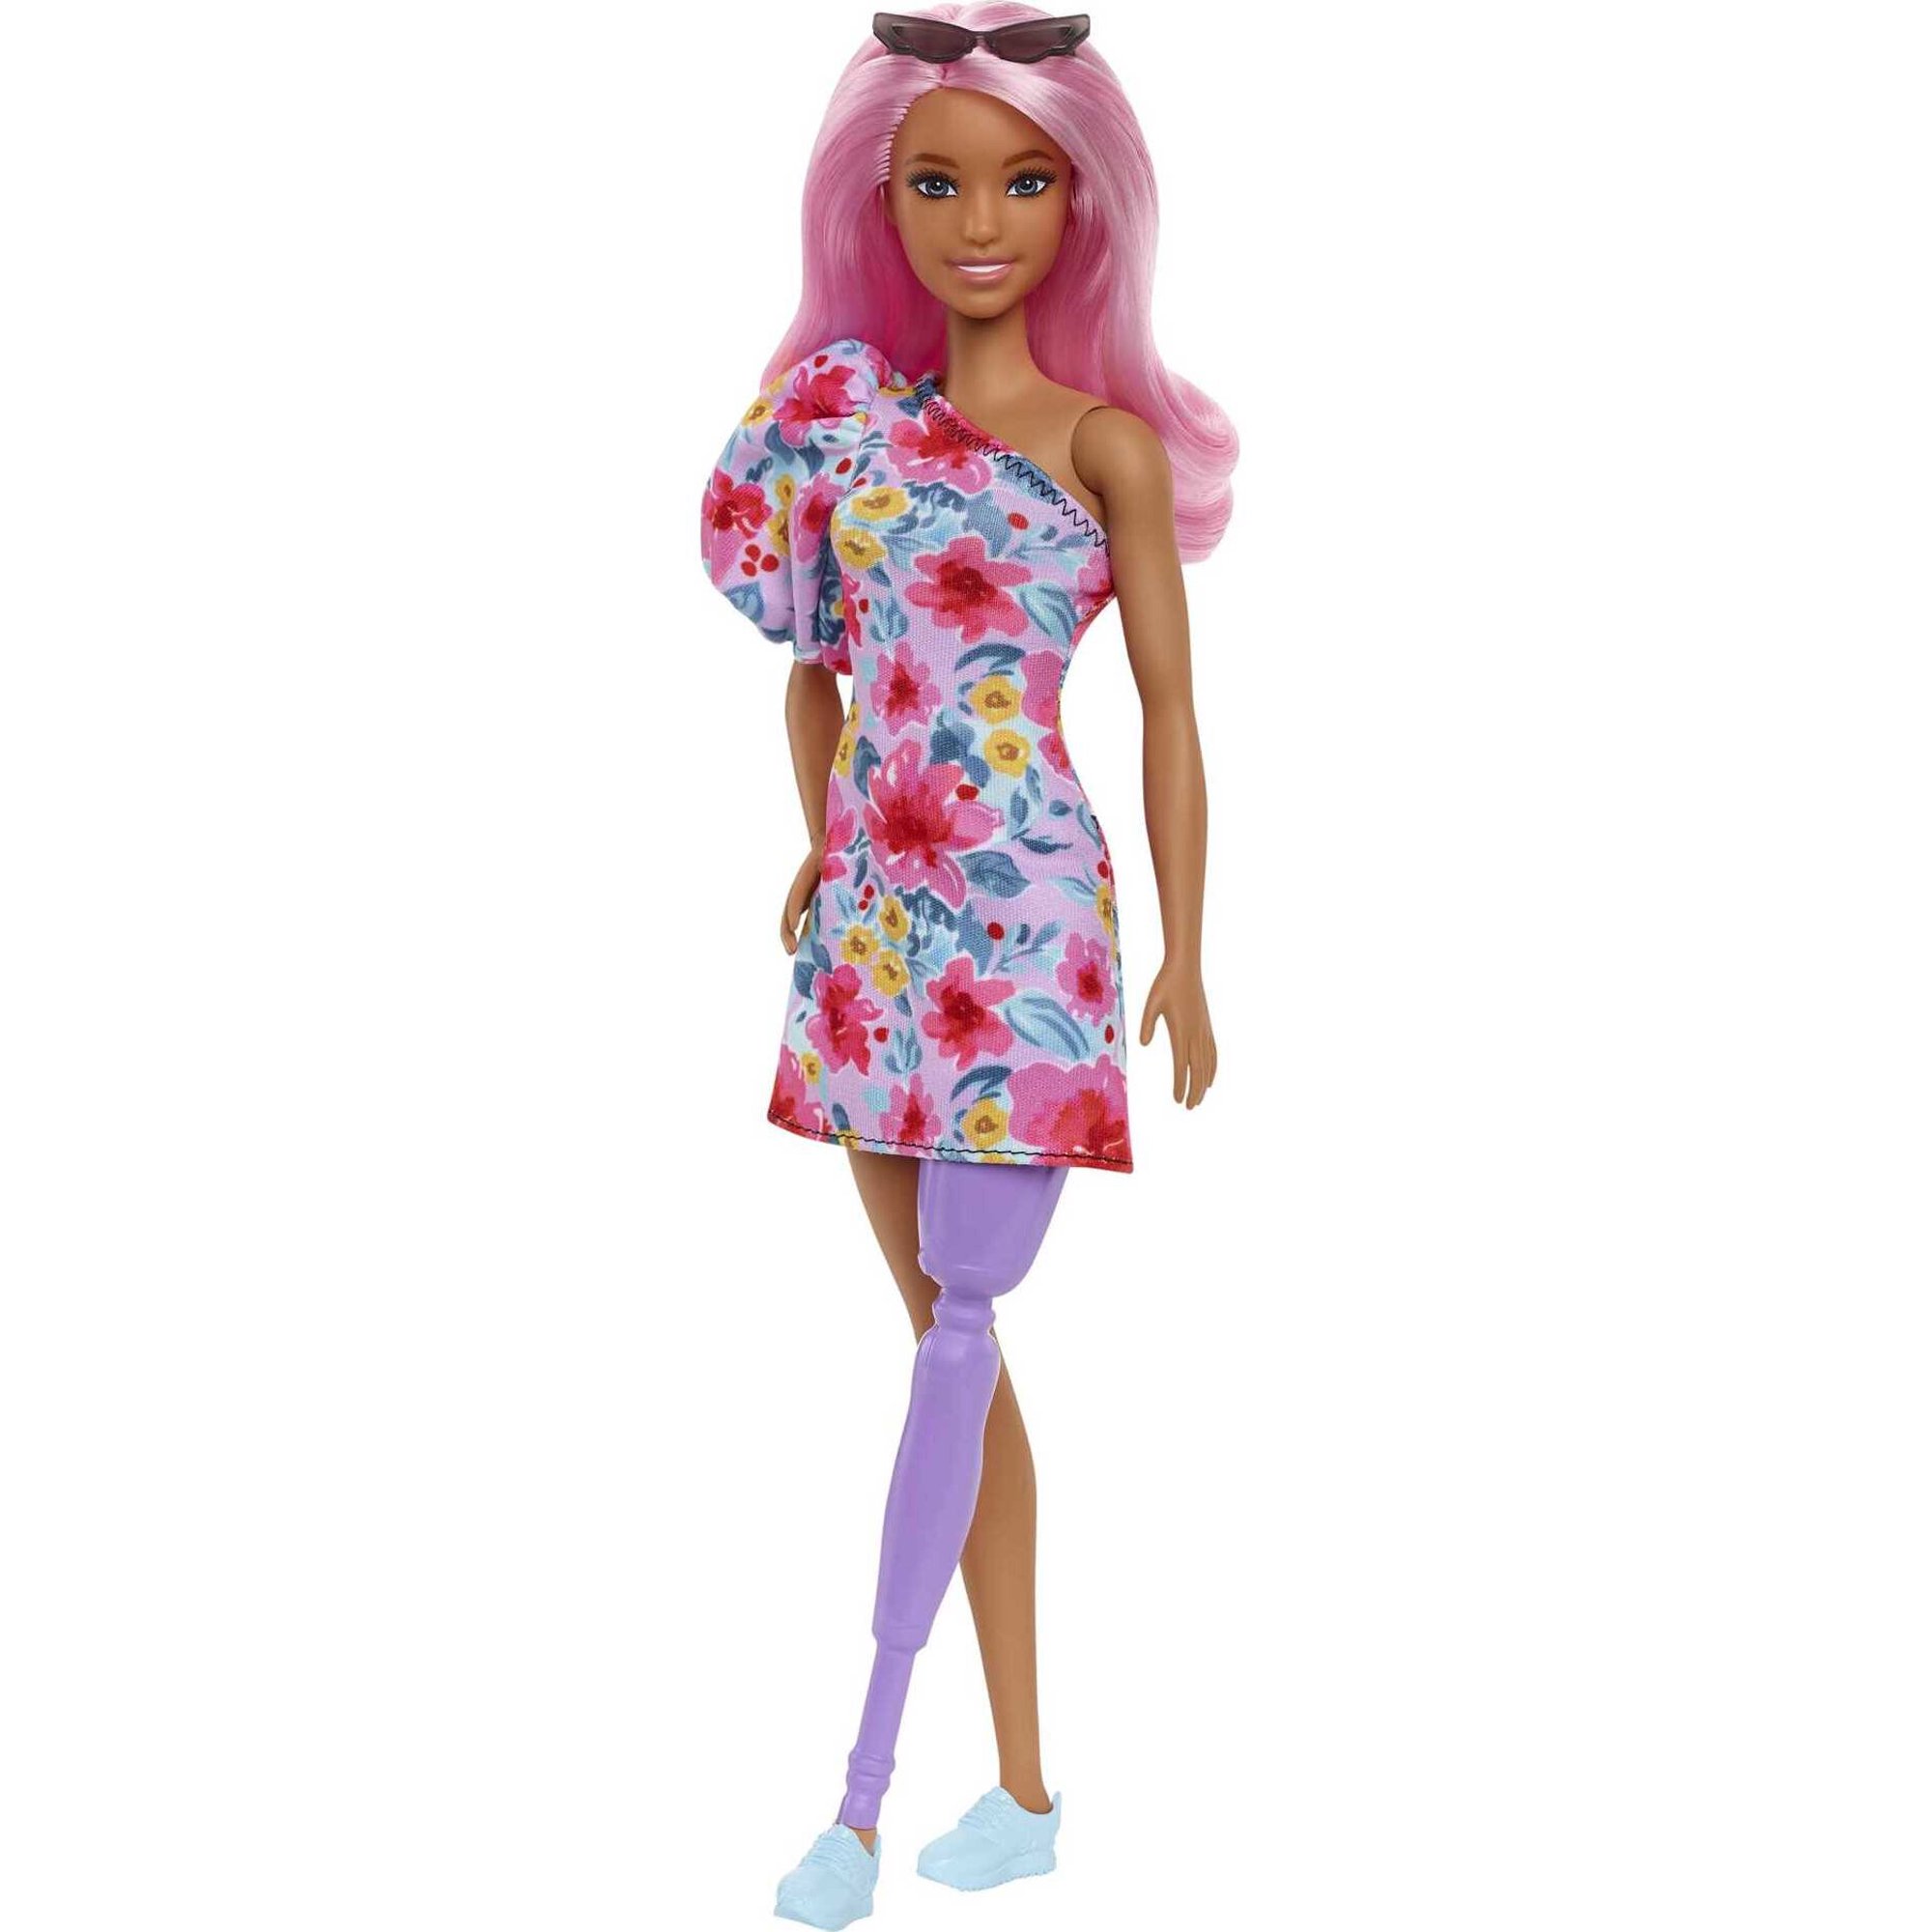 Barbie Doll Curvy Fashionista Pink Hair Daisy